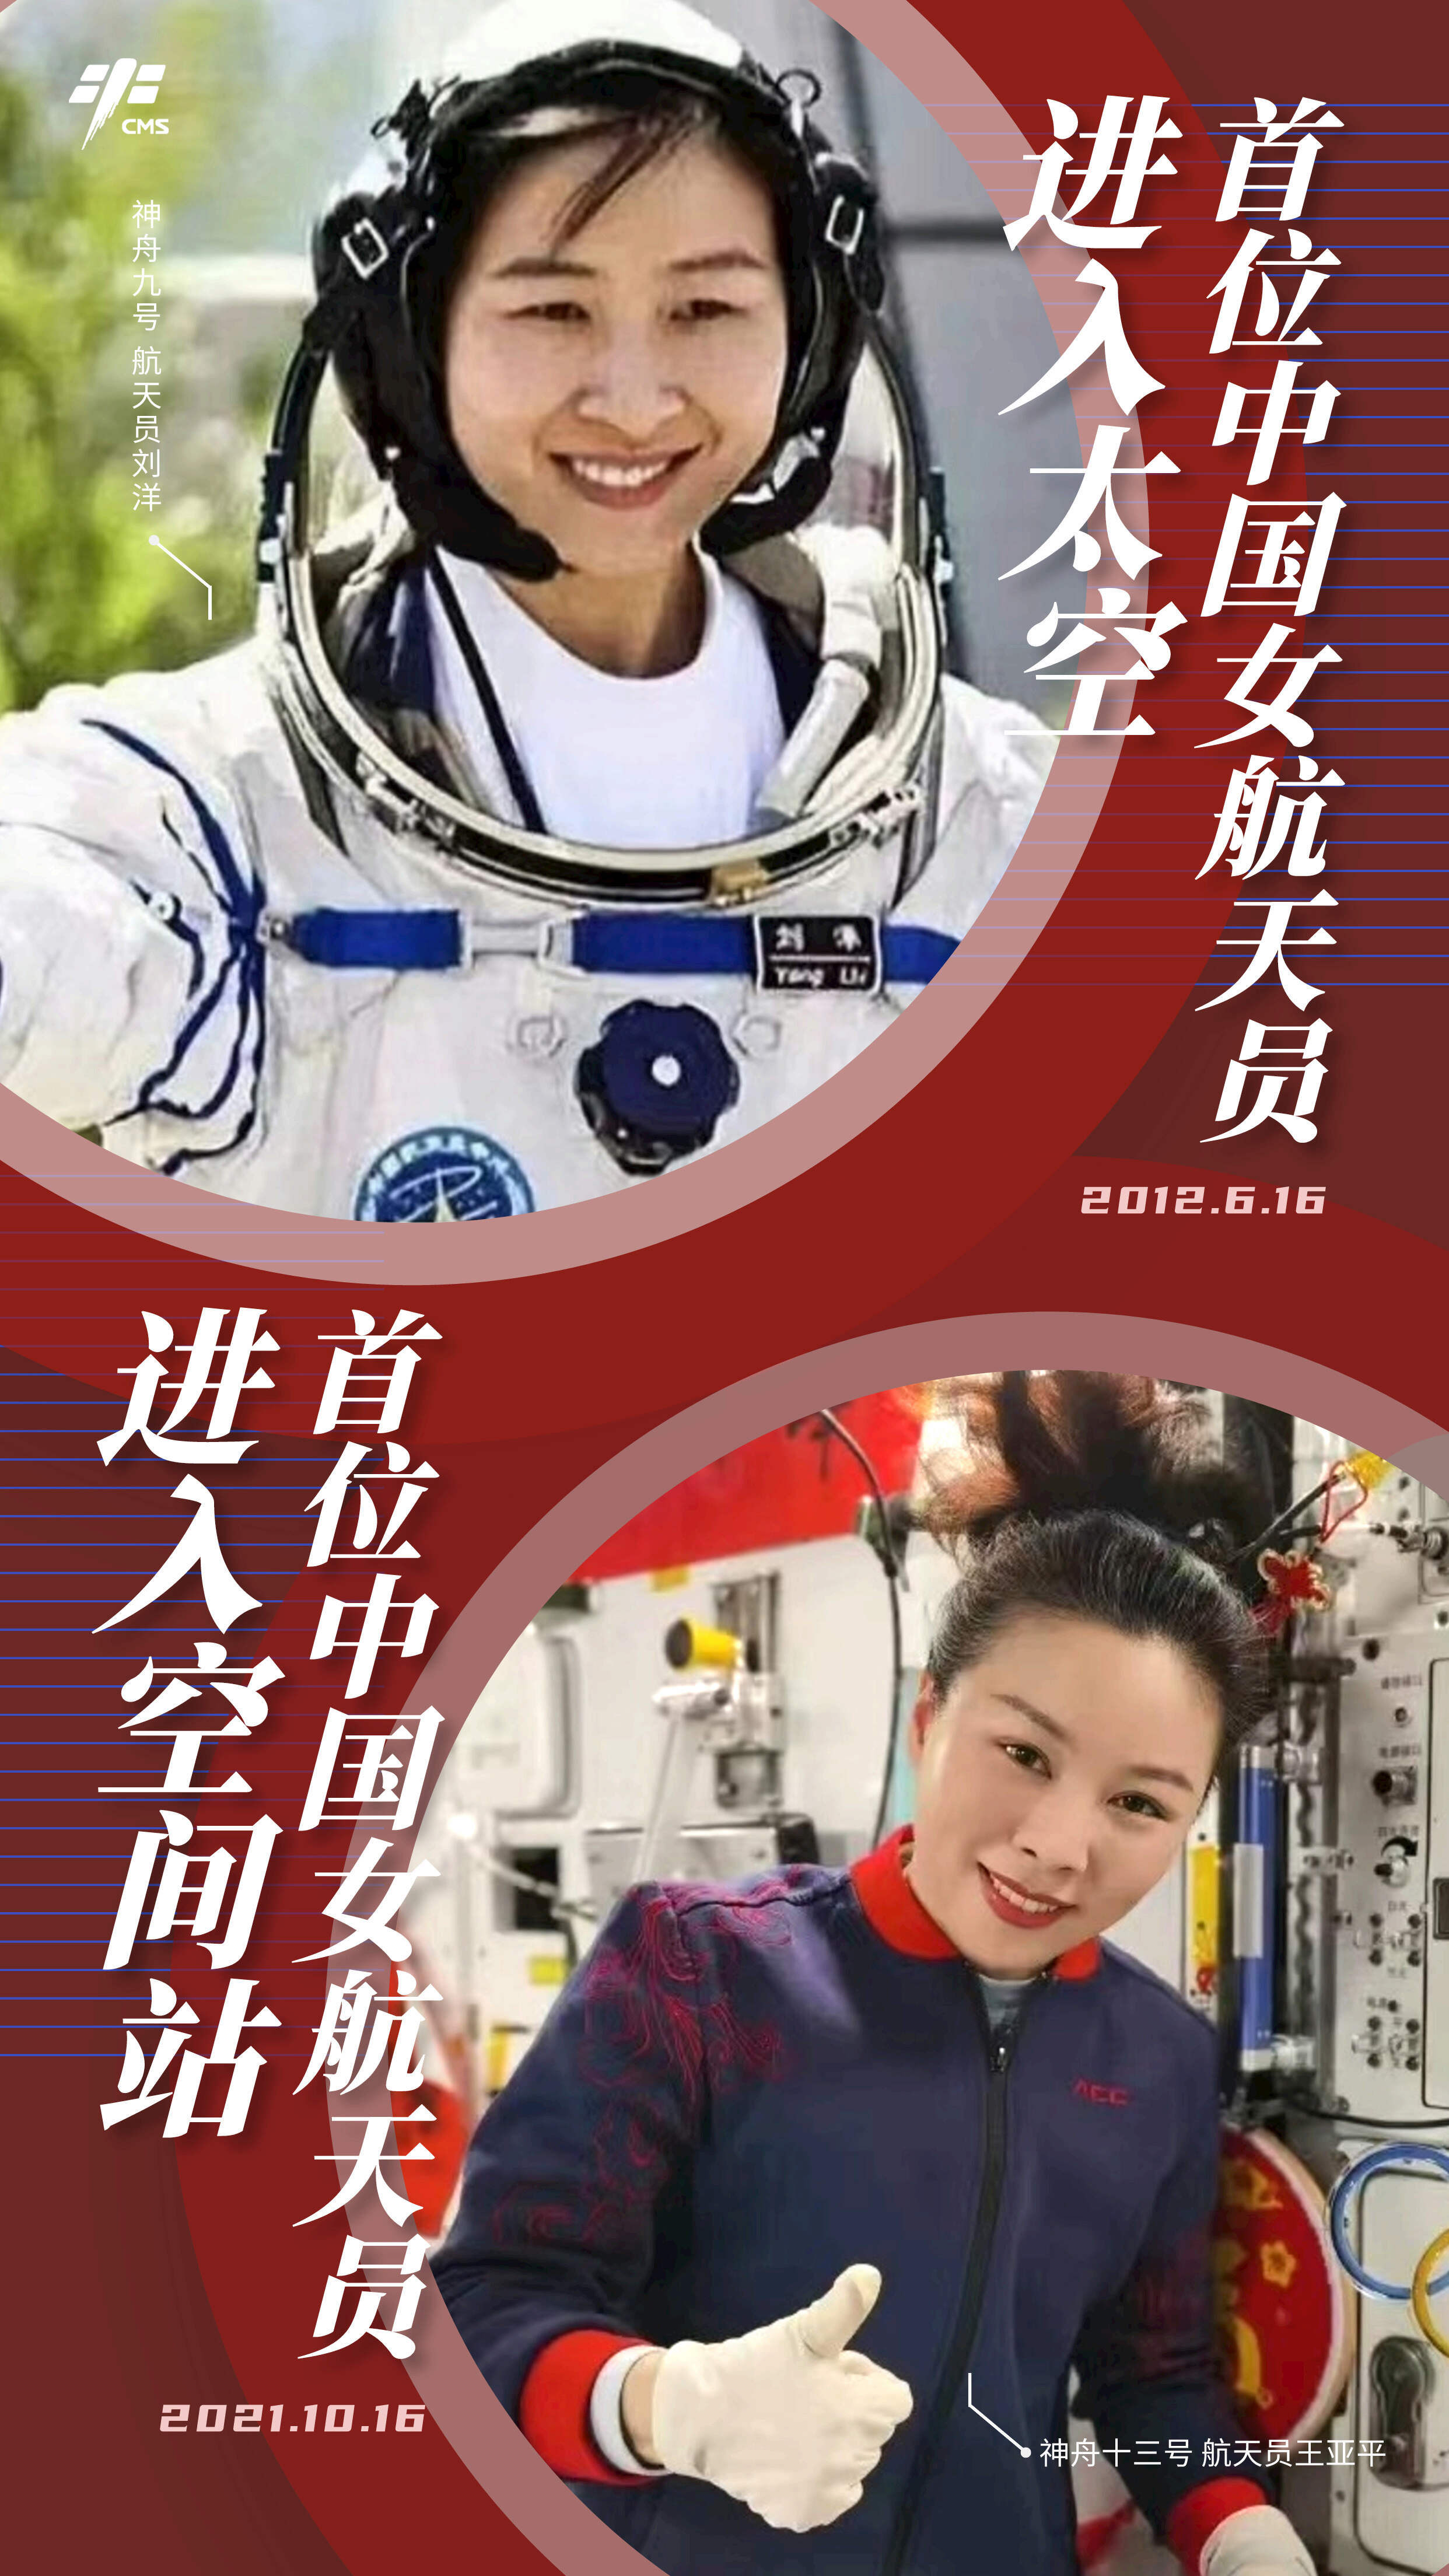 Le secteur spatial chinois - Page 35 82e4e424